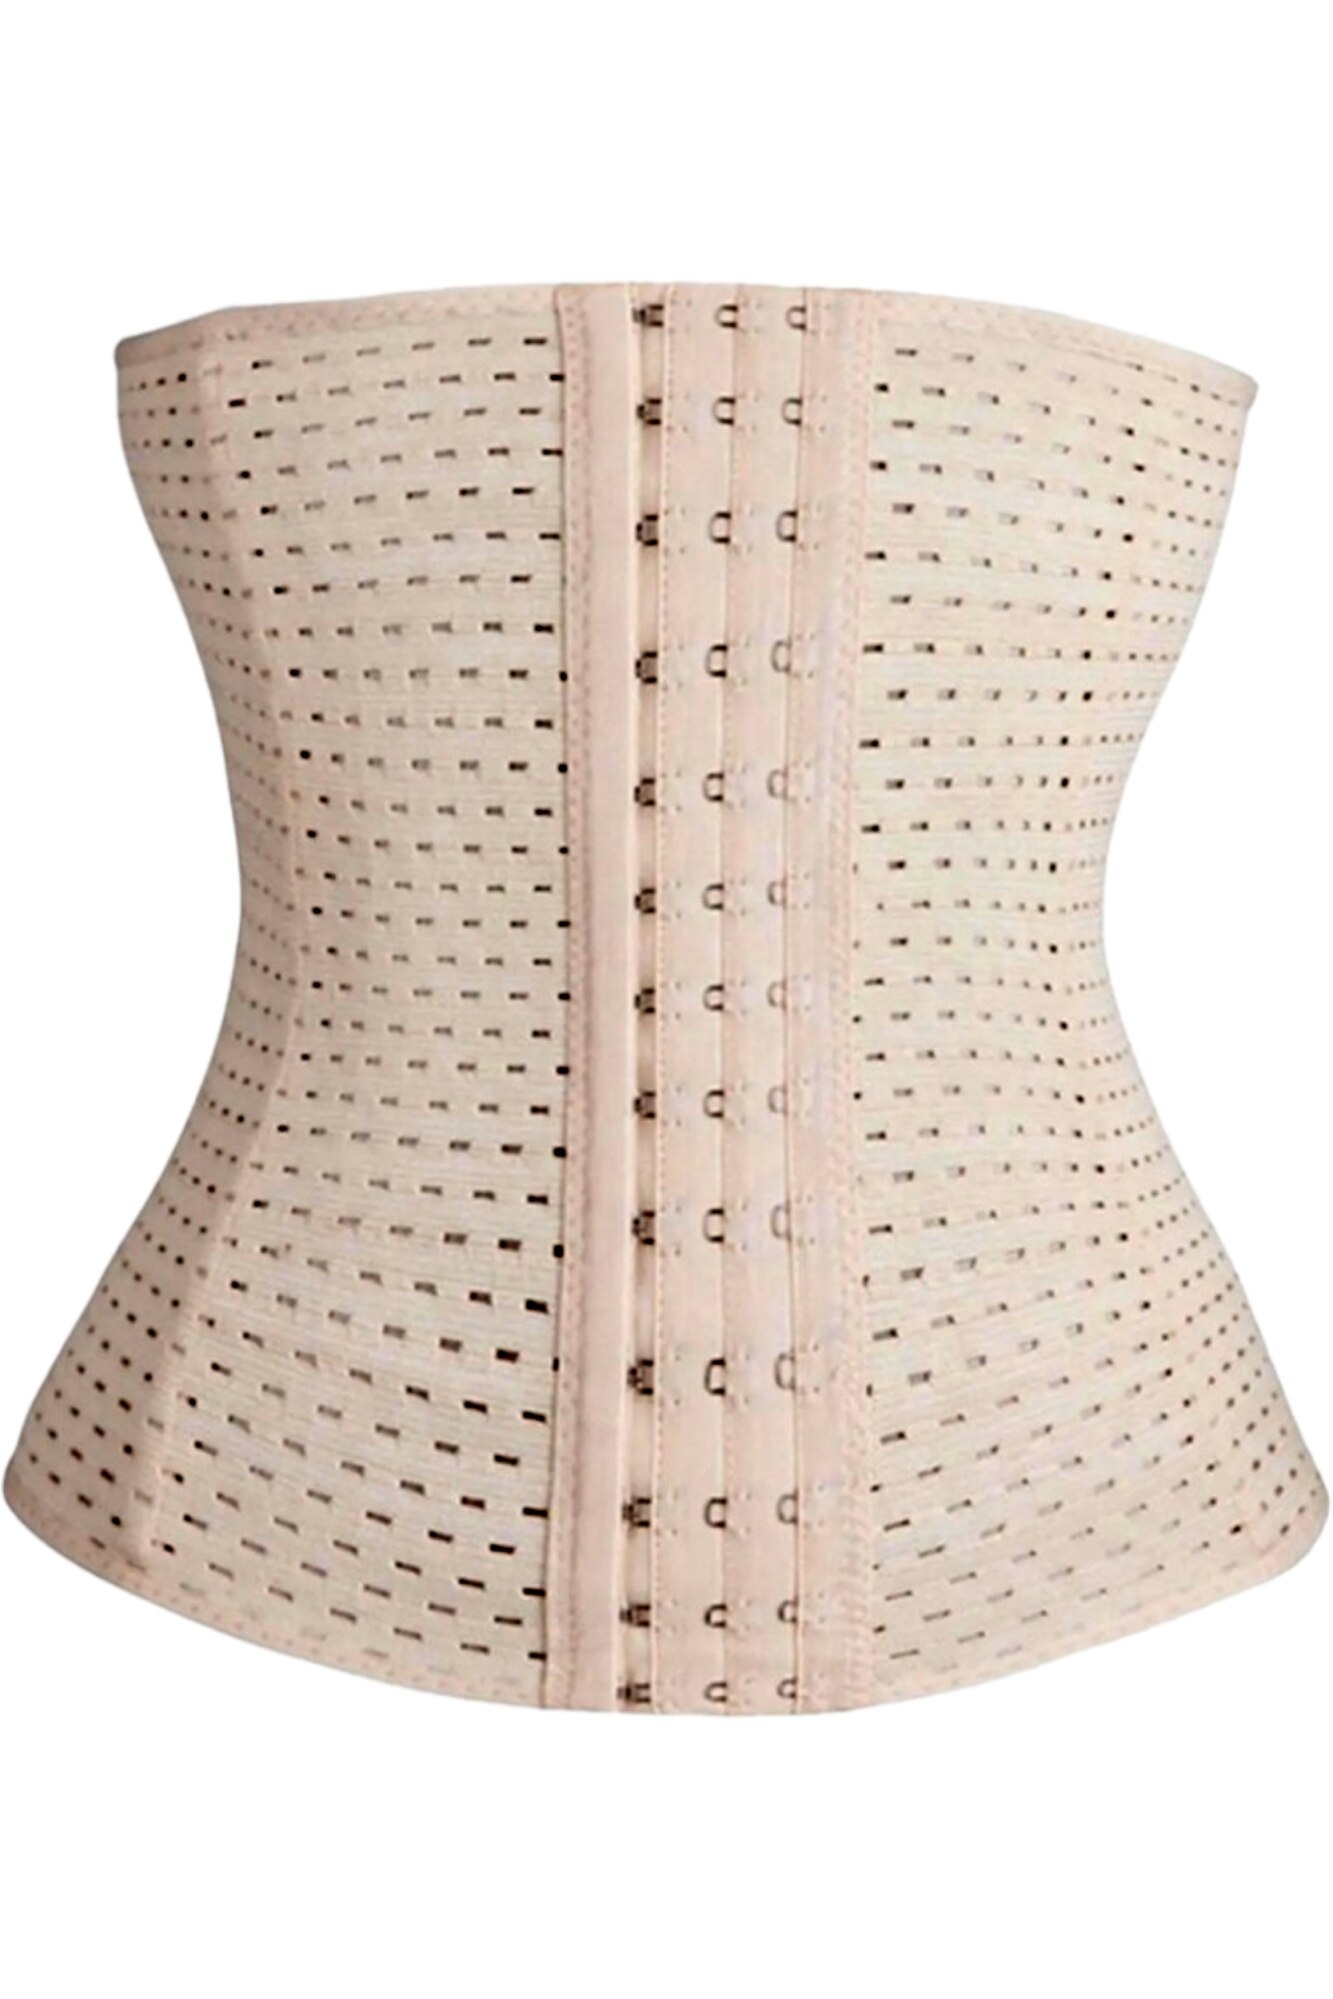 Centura modelatoare tip corset, StarFashion, pentru talie de viespe, cu 3  randuri de copci mos si baba, reglabila, Bej